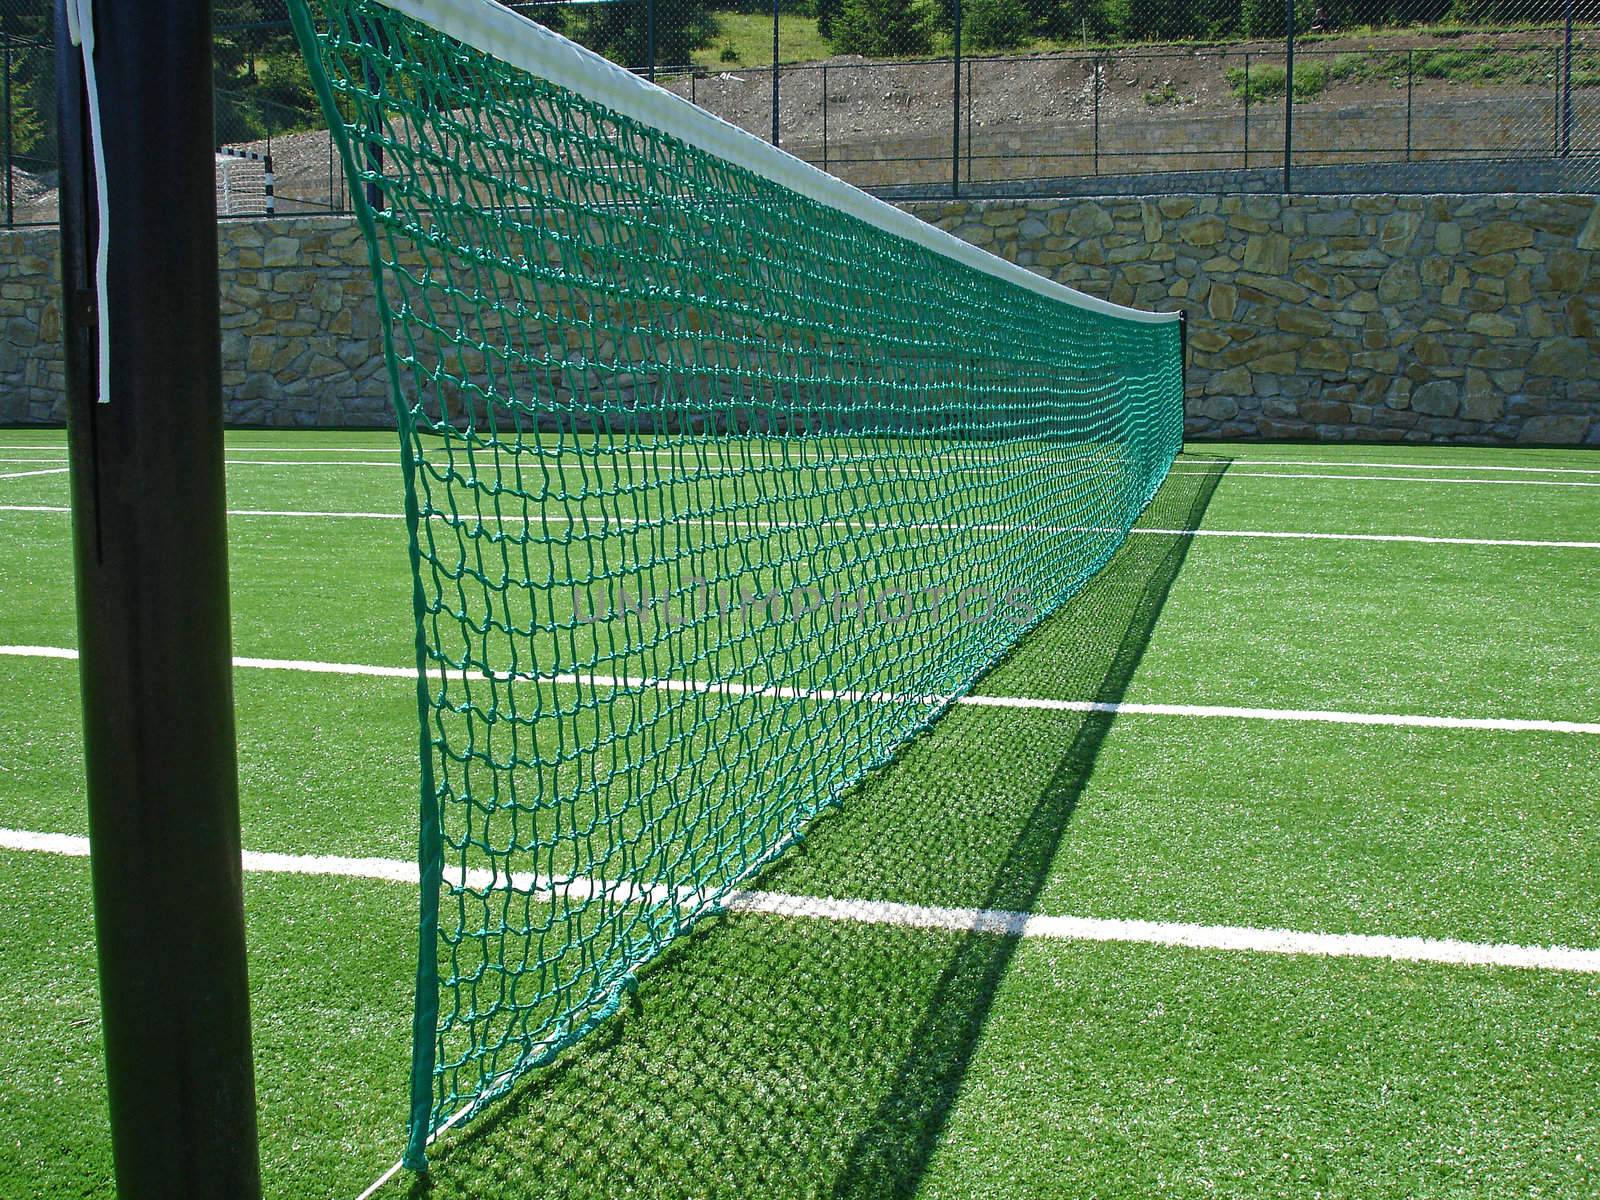  tennis net on empty tennis field                              